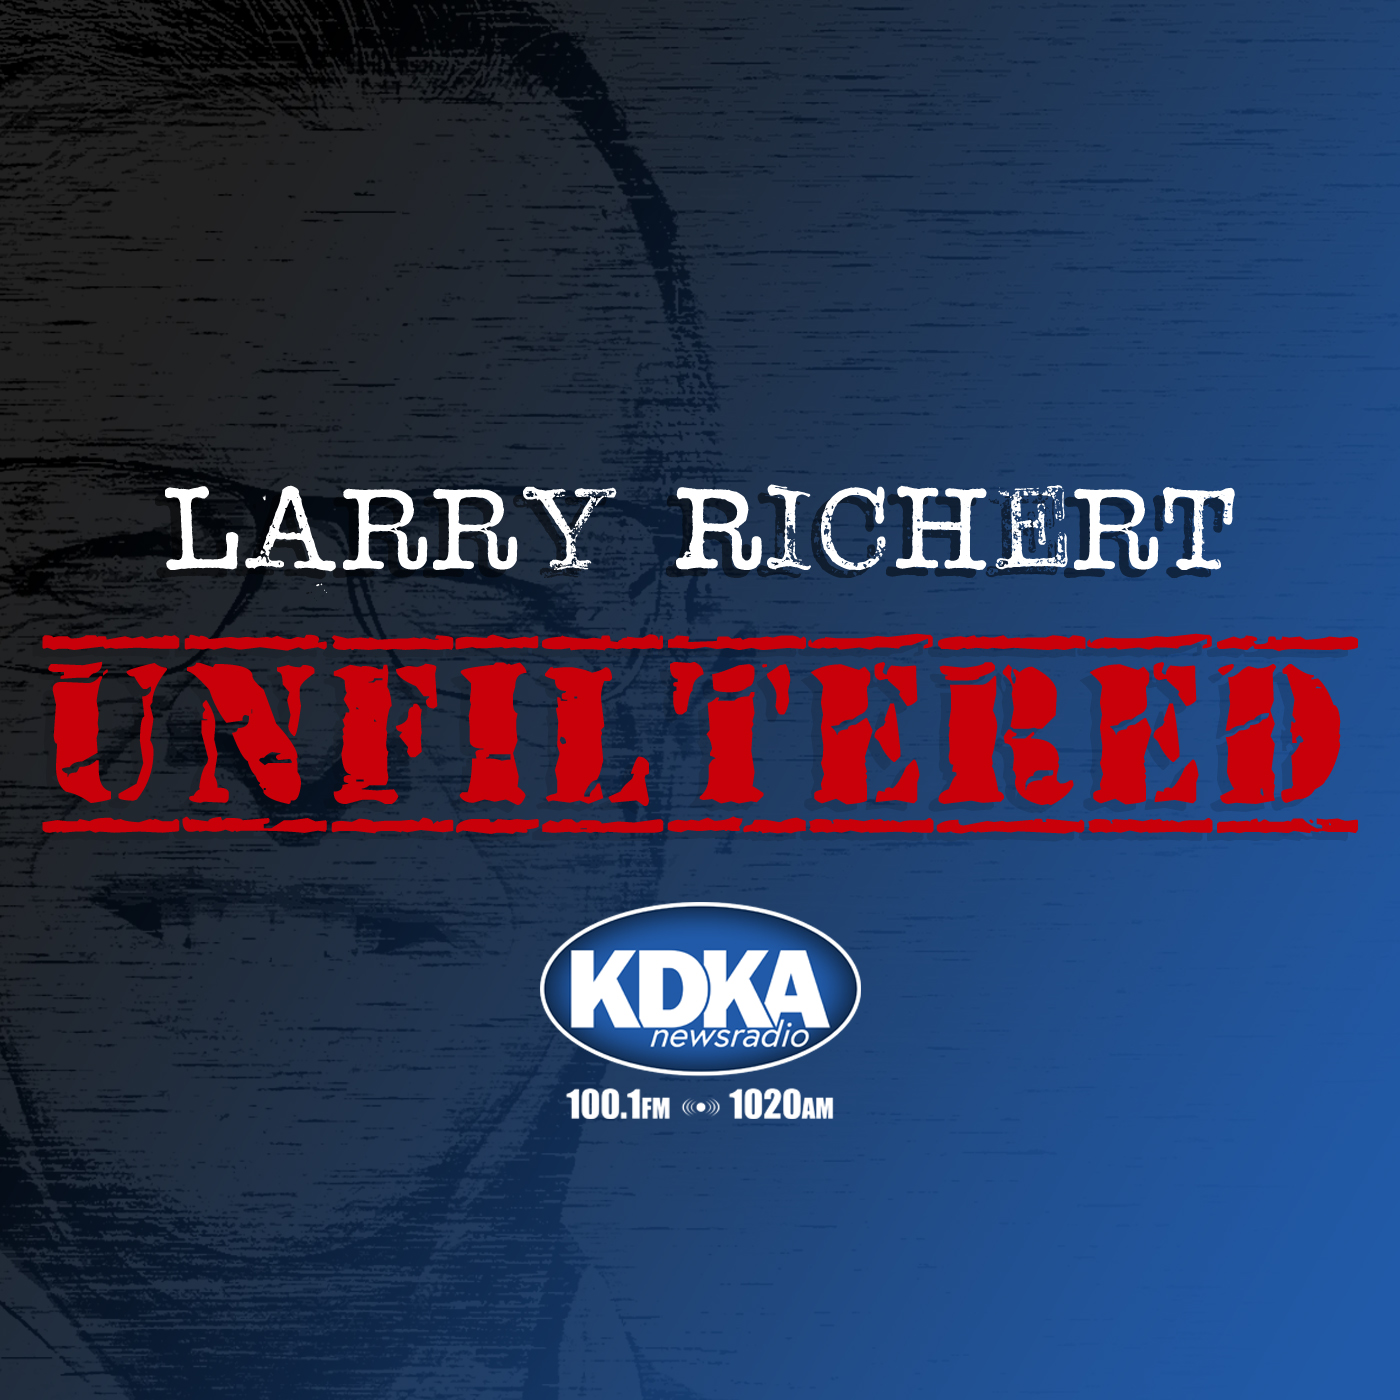 Episode #34 “Larry Richert: Unfiltered”